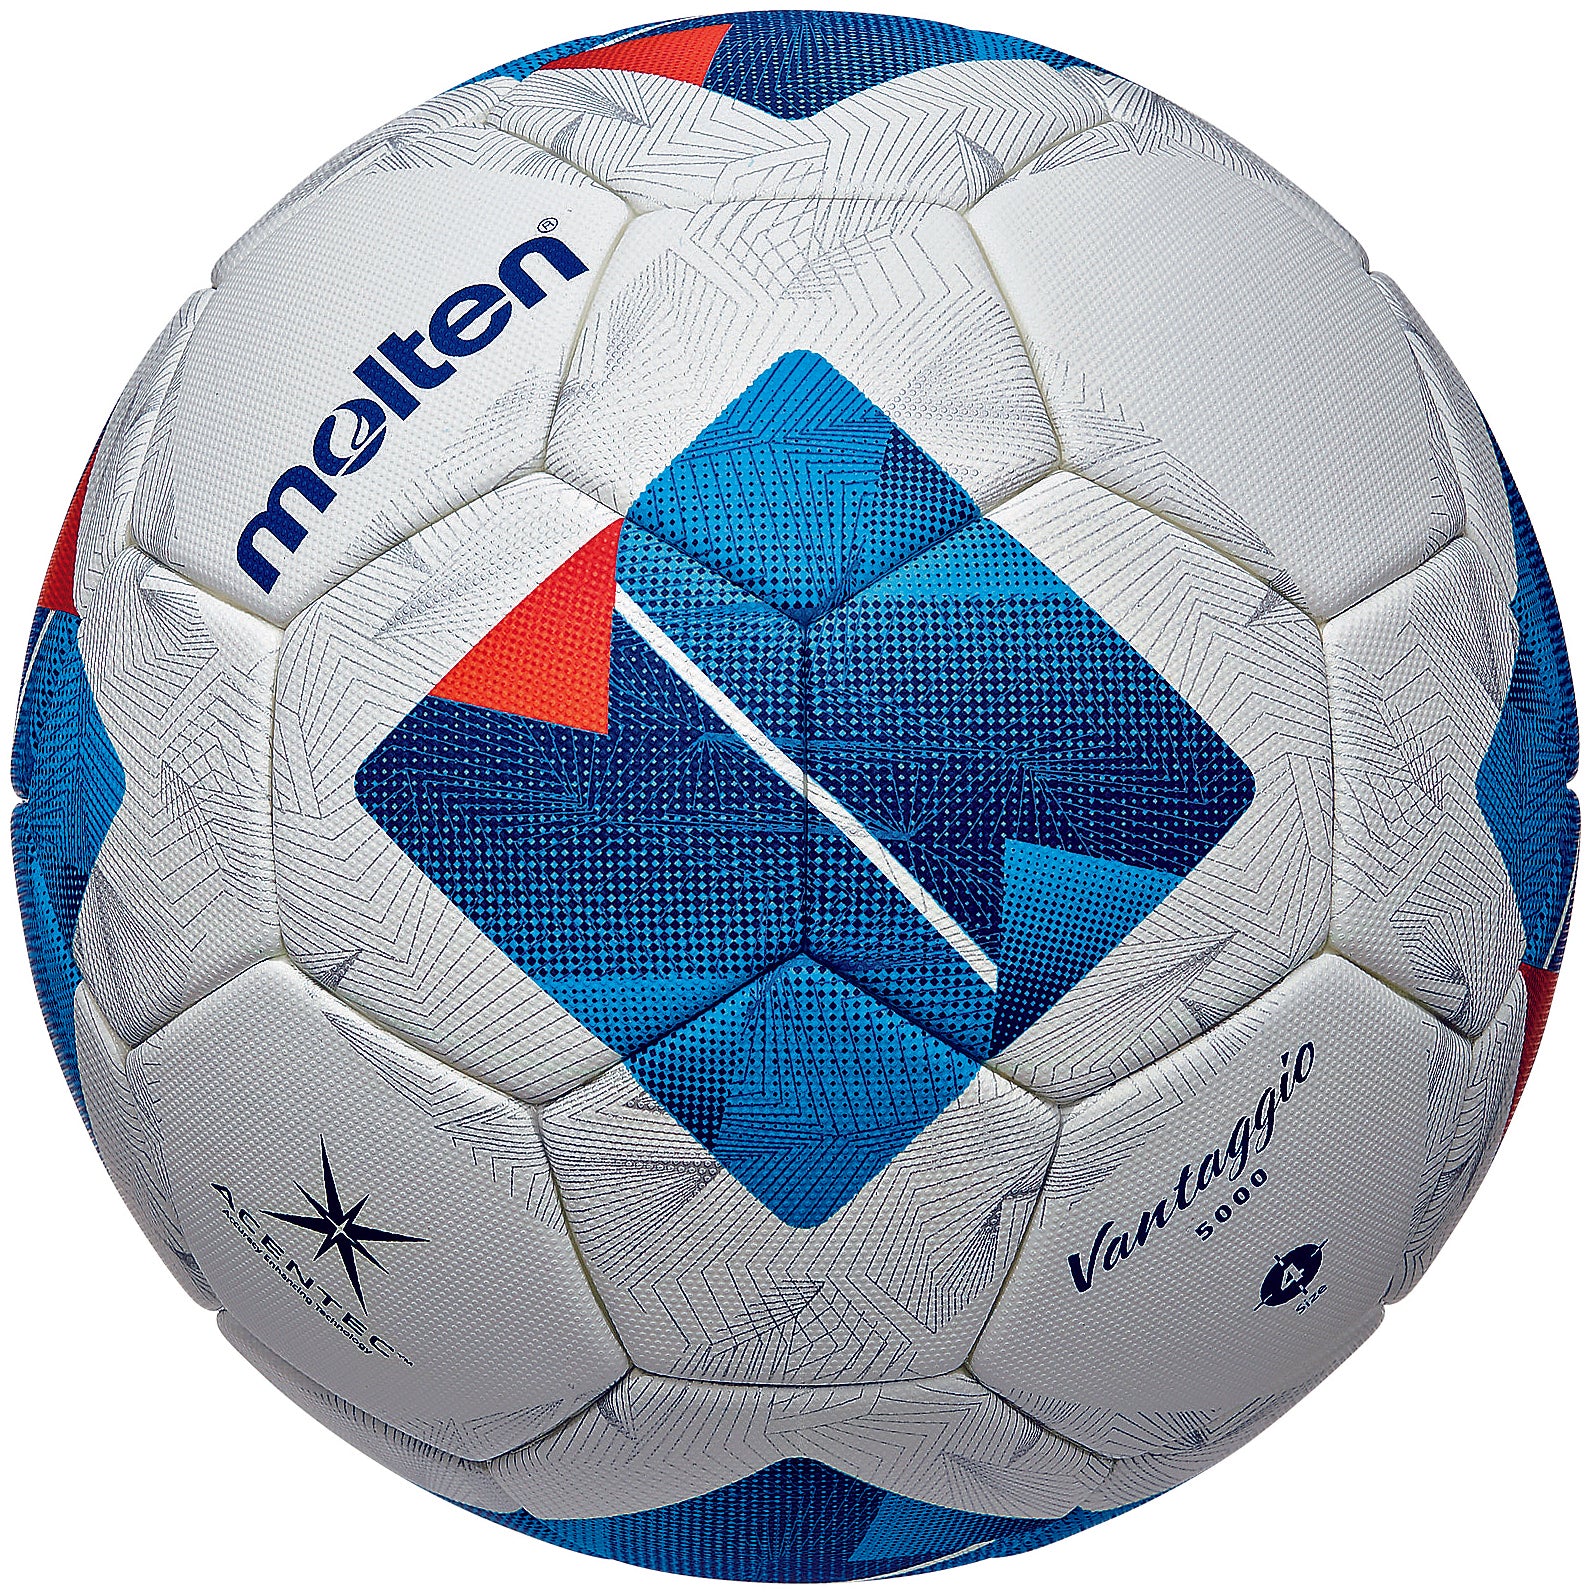 モルテン サッカーボール 5号球 (人工皮革) Molten ヴァンタッジオ4950 